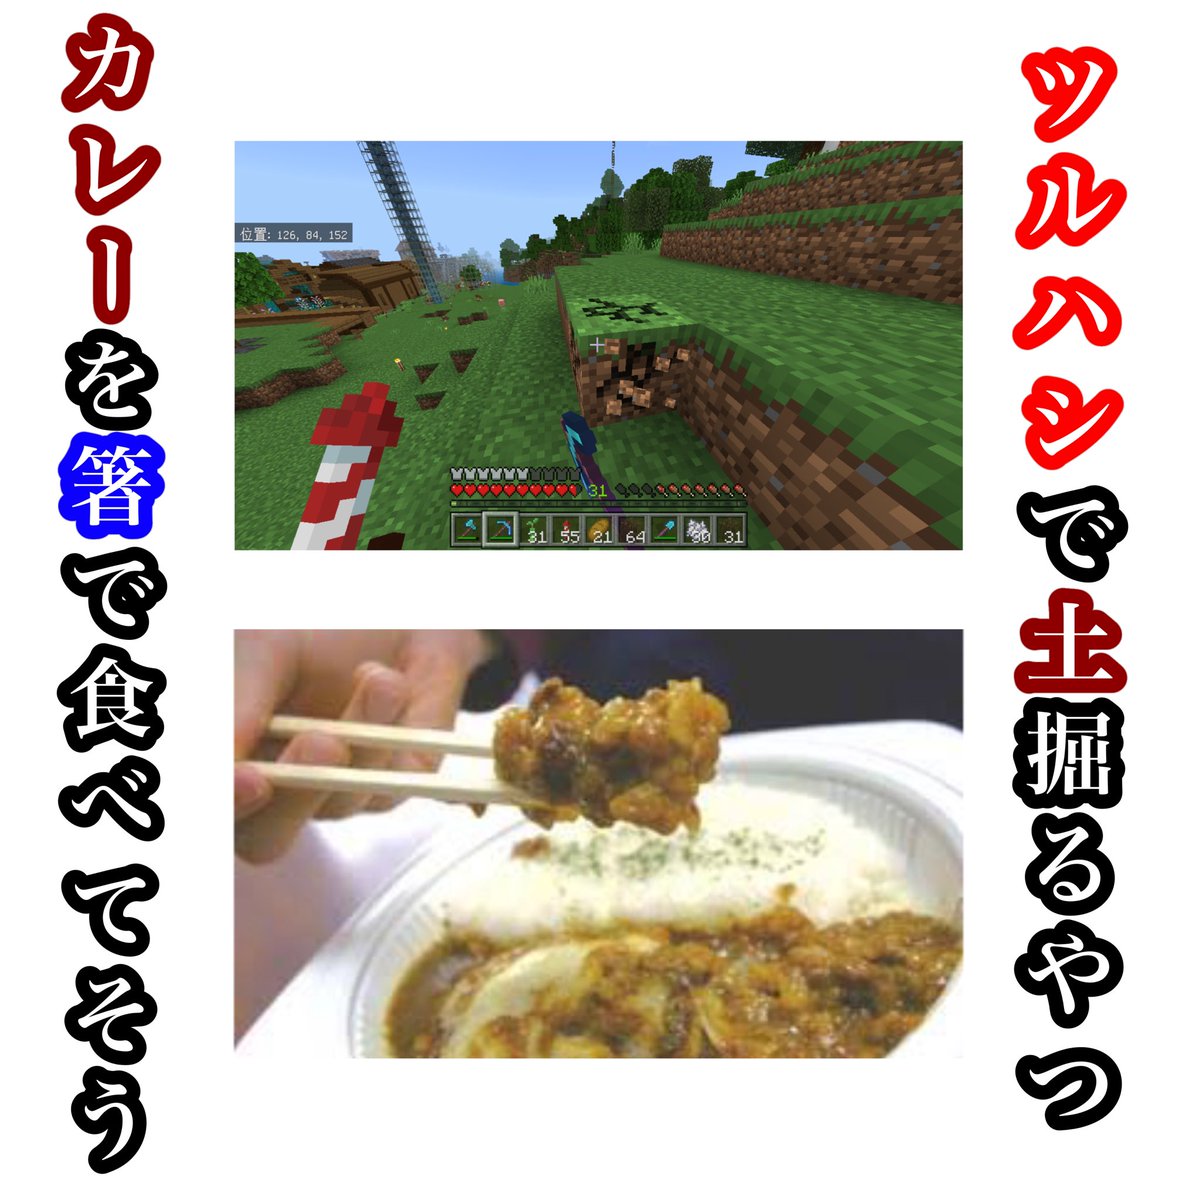 【偏見】
マイクラで土を鶴橋で掘るやつ……カレーを箸で食べてそう